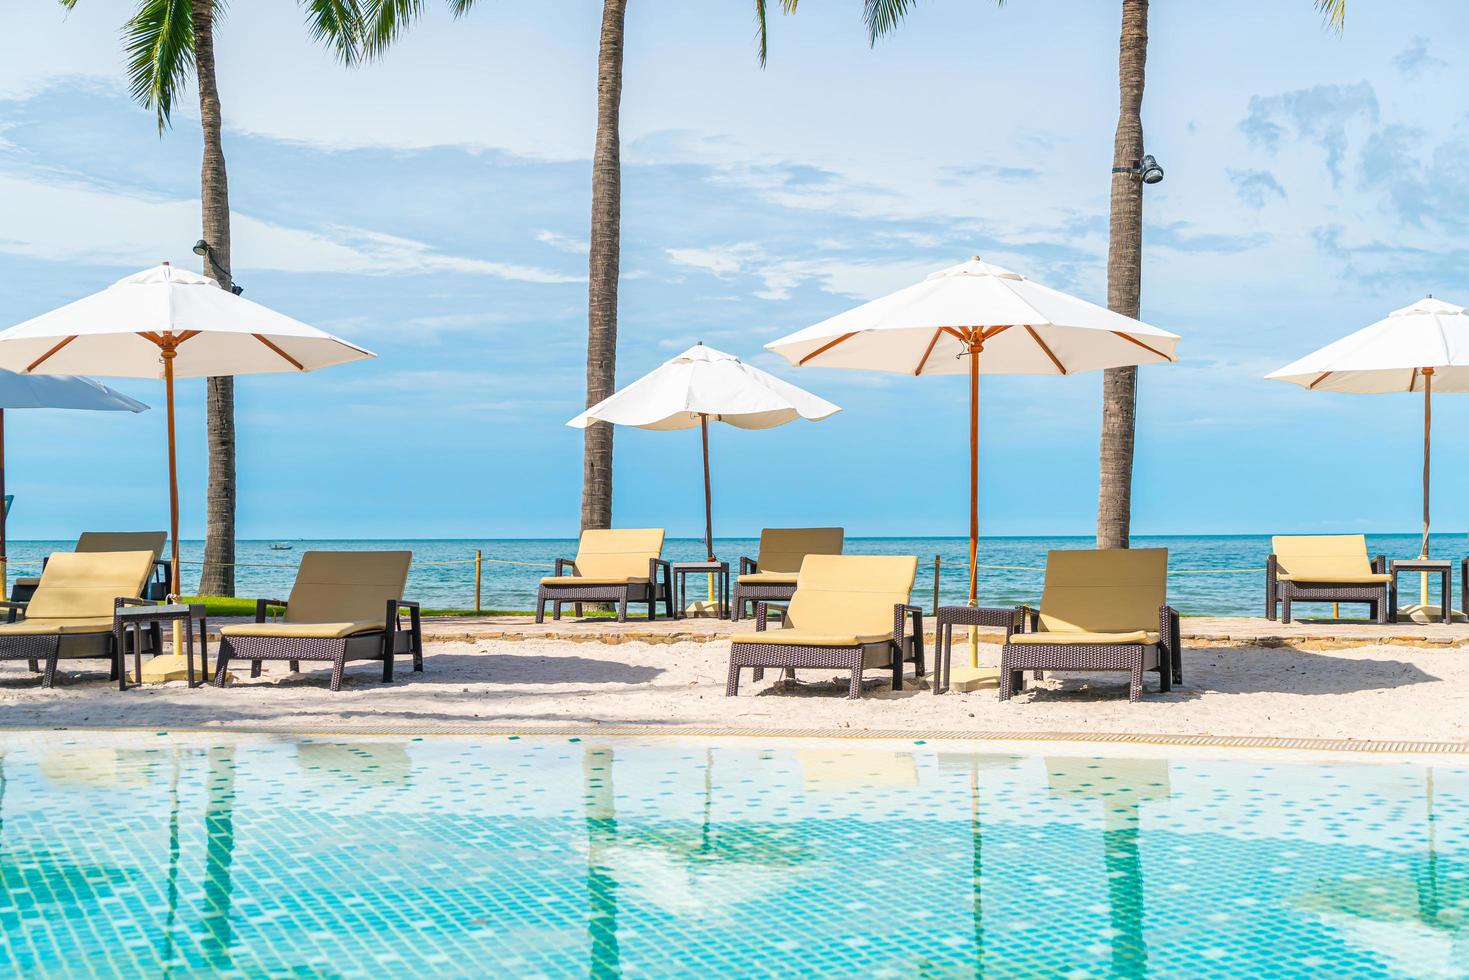 vacker tropisk strand och hav med paraply och stol runt poolen i hotellresorten foto